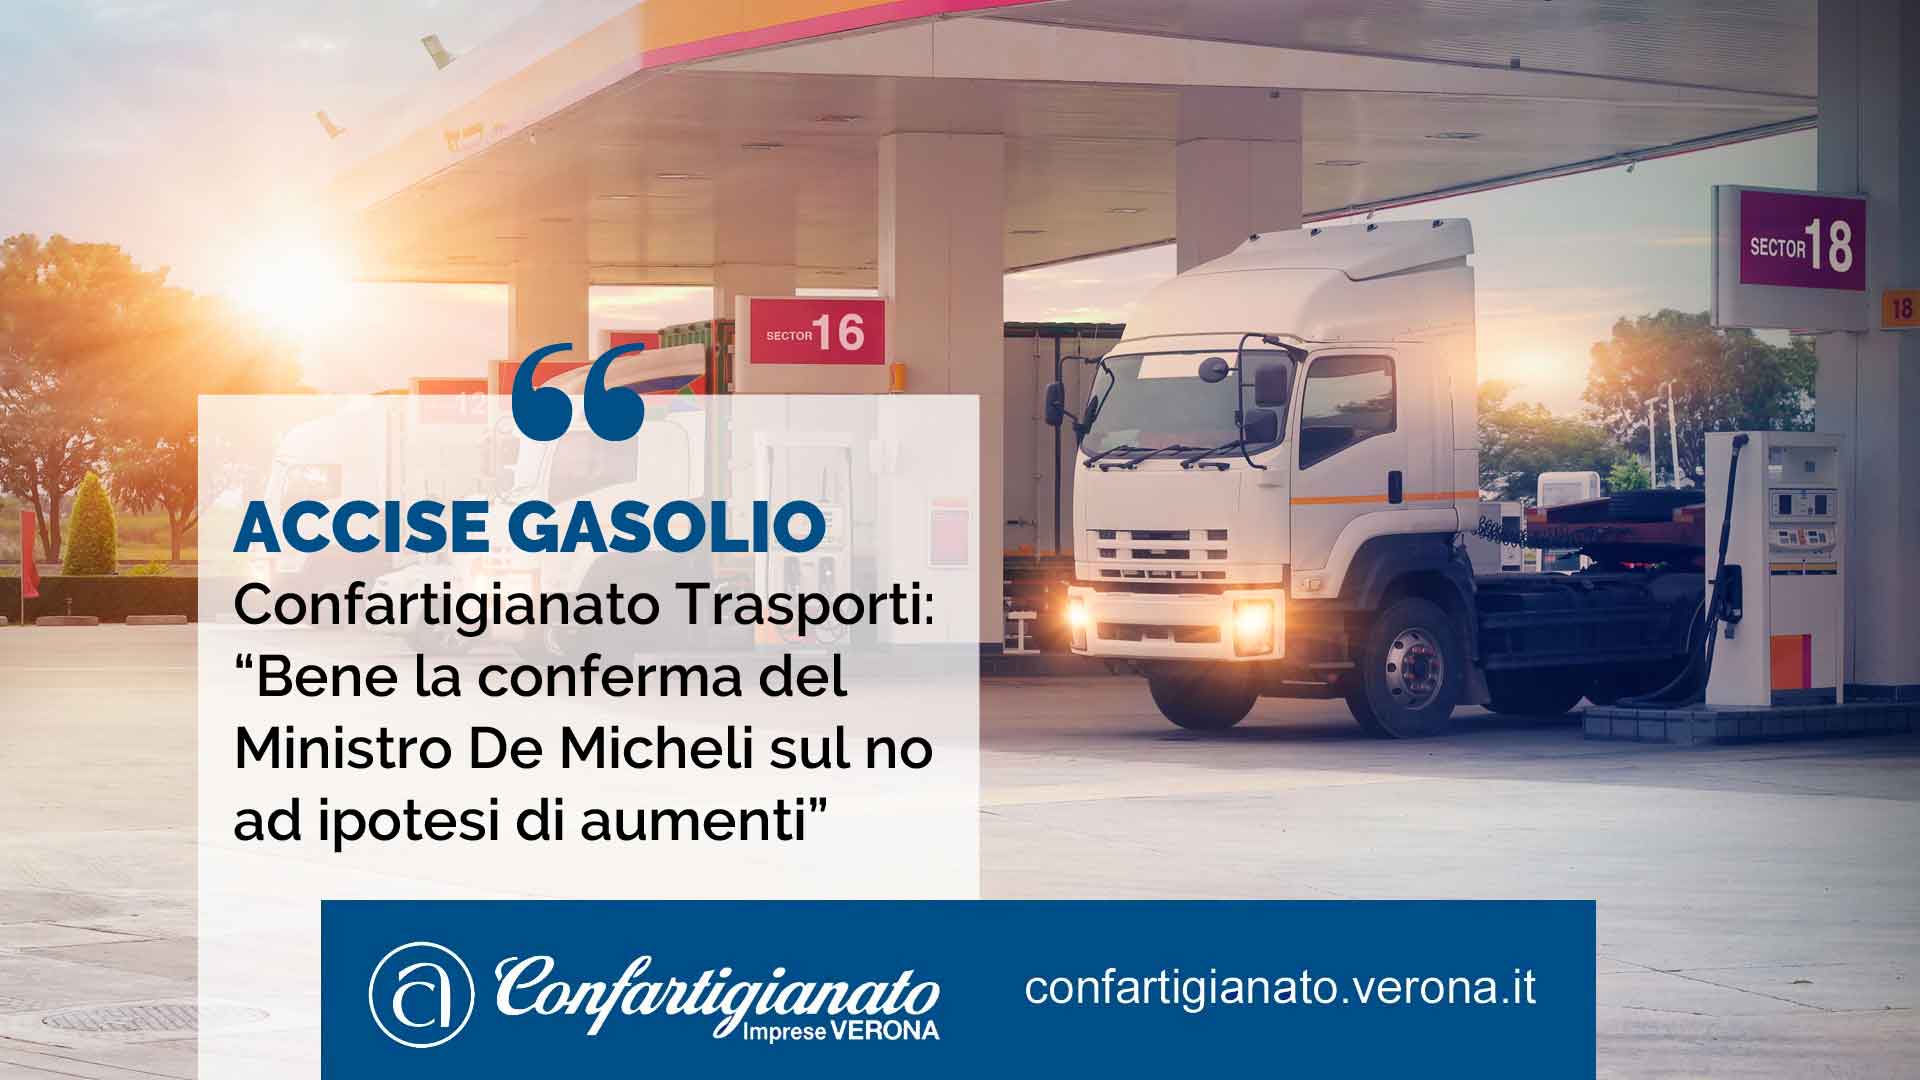 ACCISE GASOLIO – Confartigianato Trasporti: “Bene la conferma del Ministro De Micheli sul no ad ipotesi di aumenti”